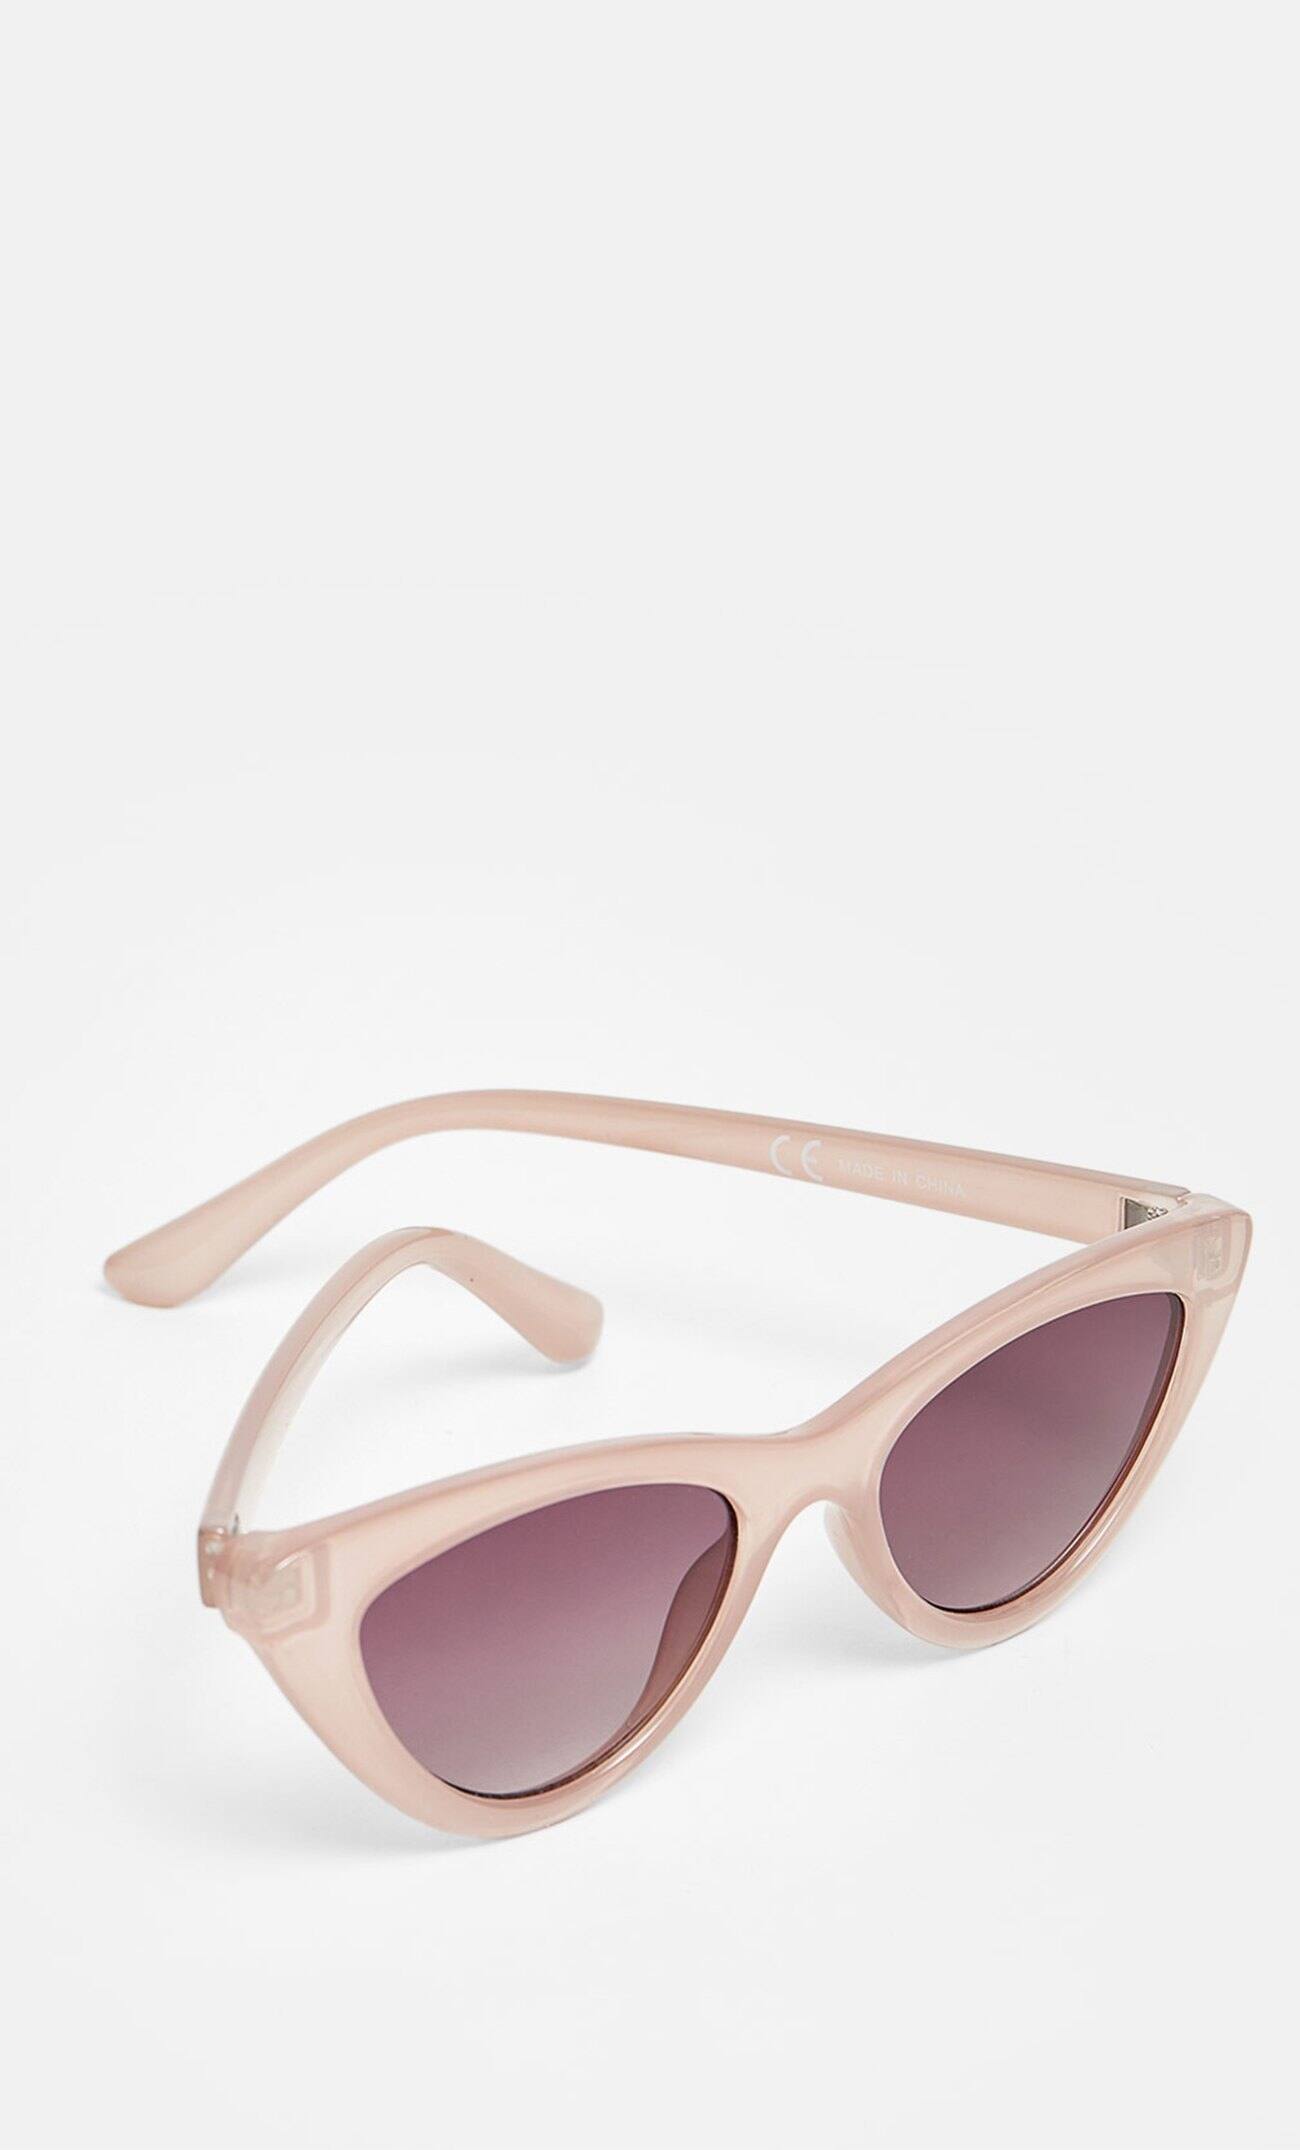 Солнечные очки в стиле «кошачий глаз» Цвет розового макияжа Stradivarius